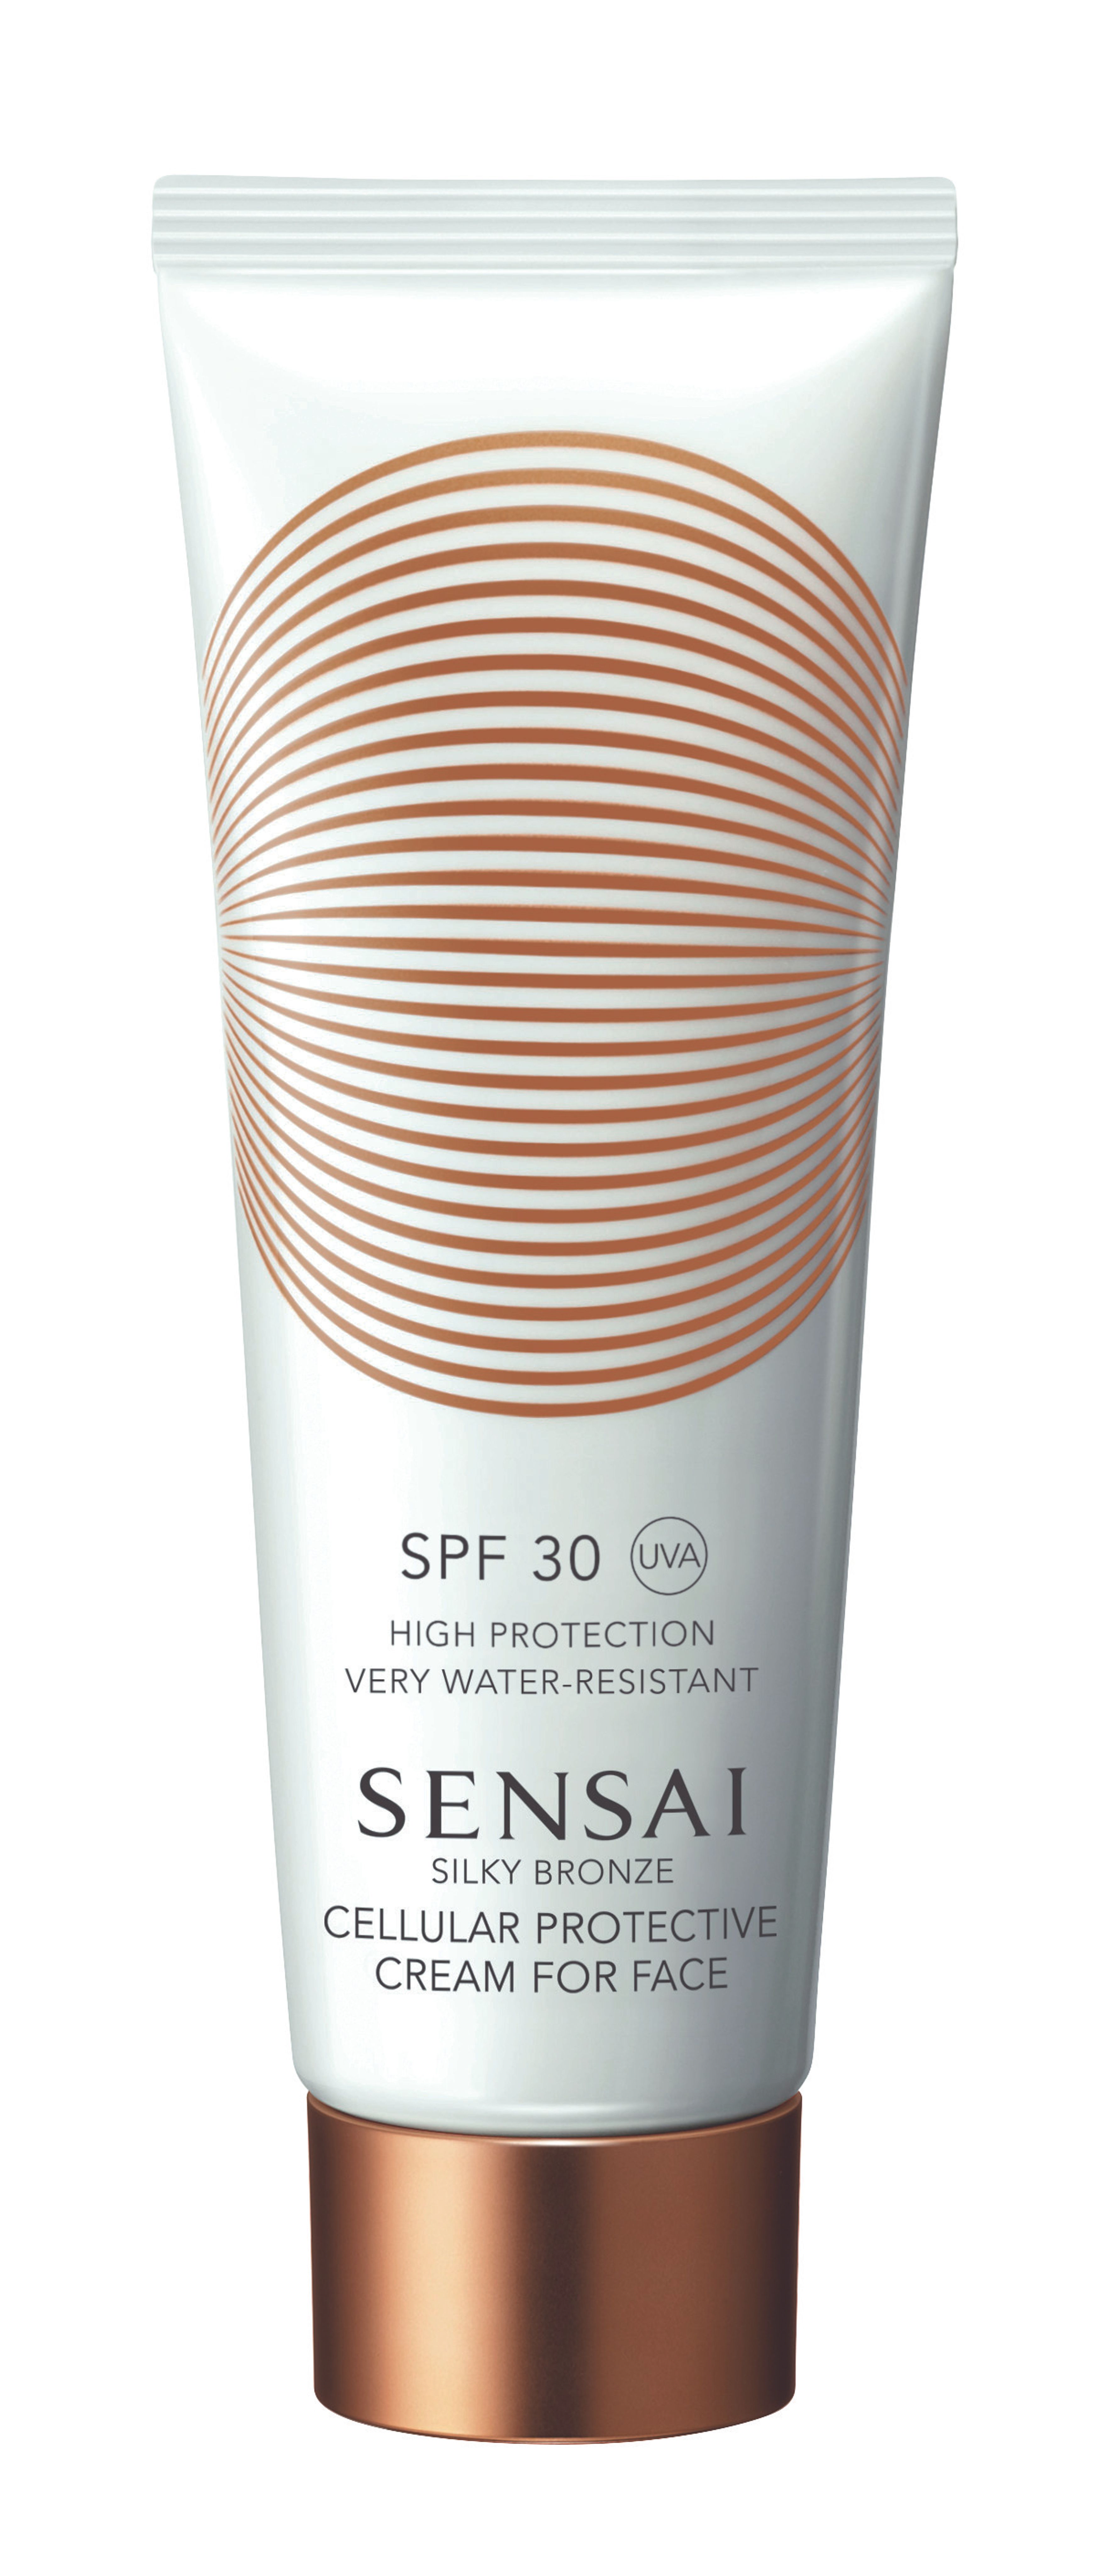 Sensai Cellular Protective Cream For Face Spf30 1